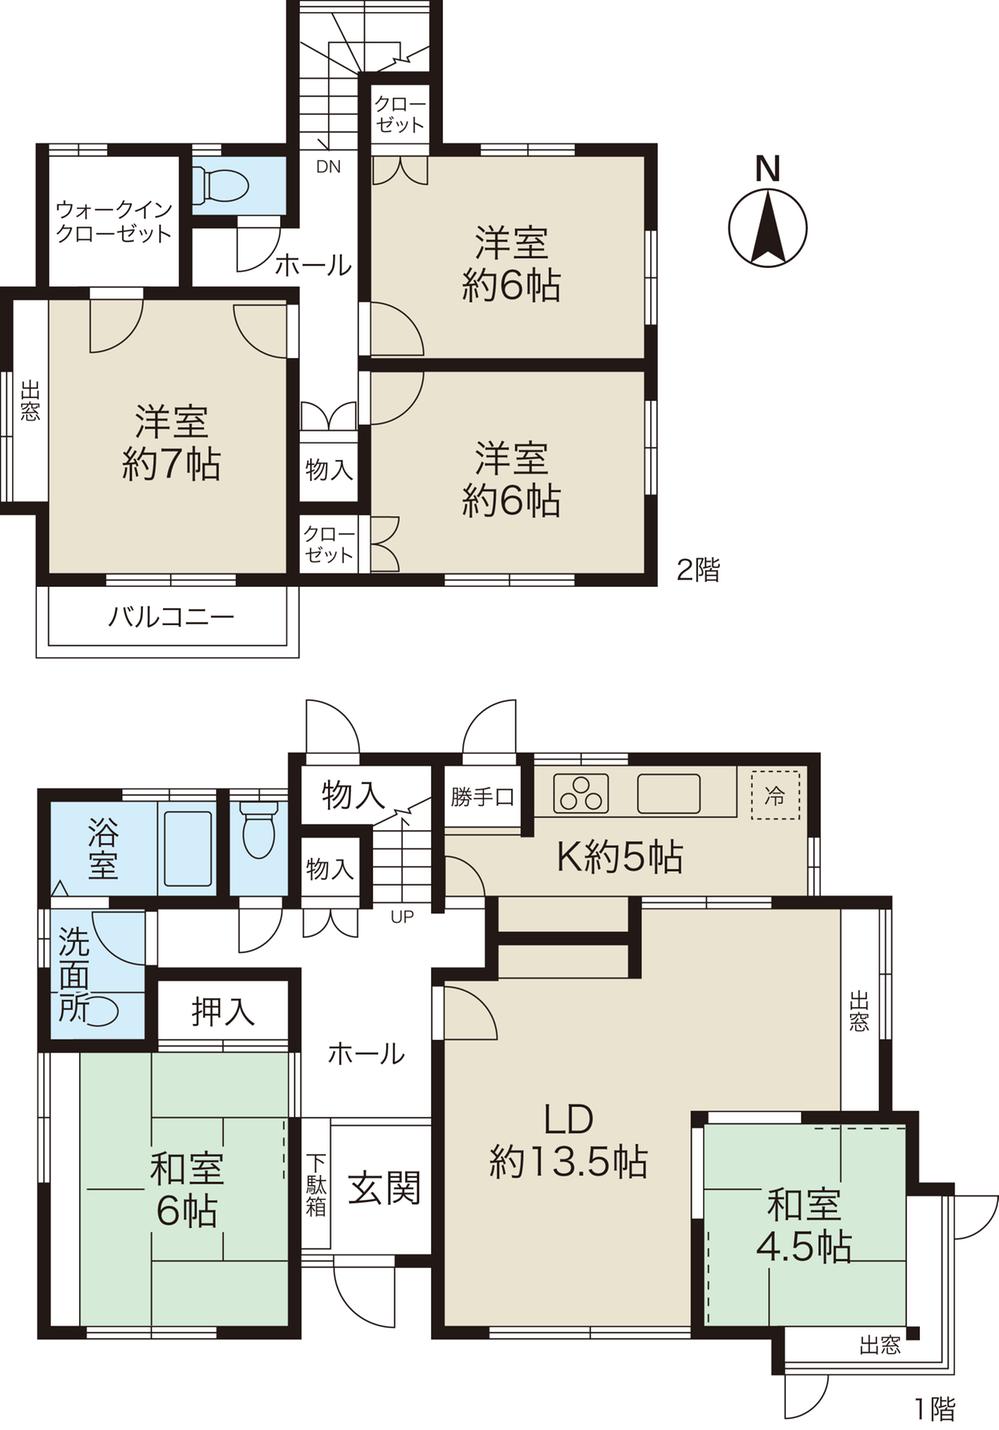 Floor plan. 36,900,000 yen, 5LDK + S (storeroom), Land area 204.94 sq m , Building area 120.27 sq m